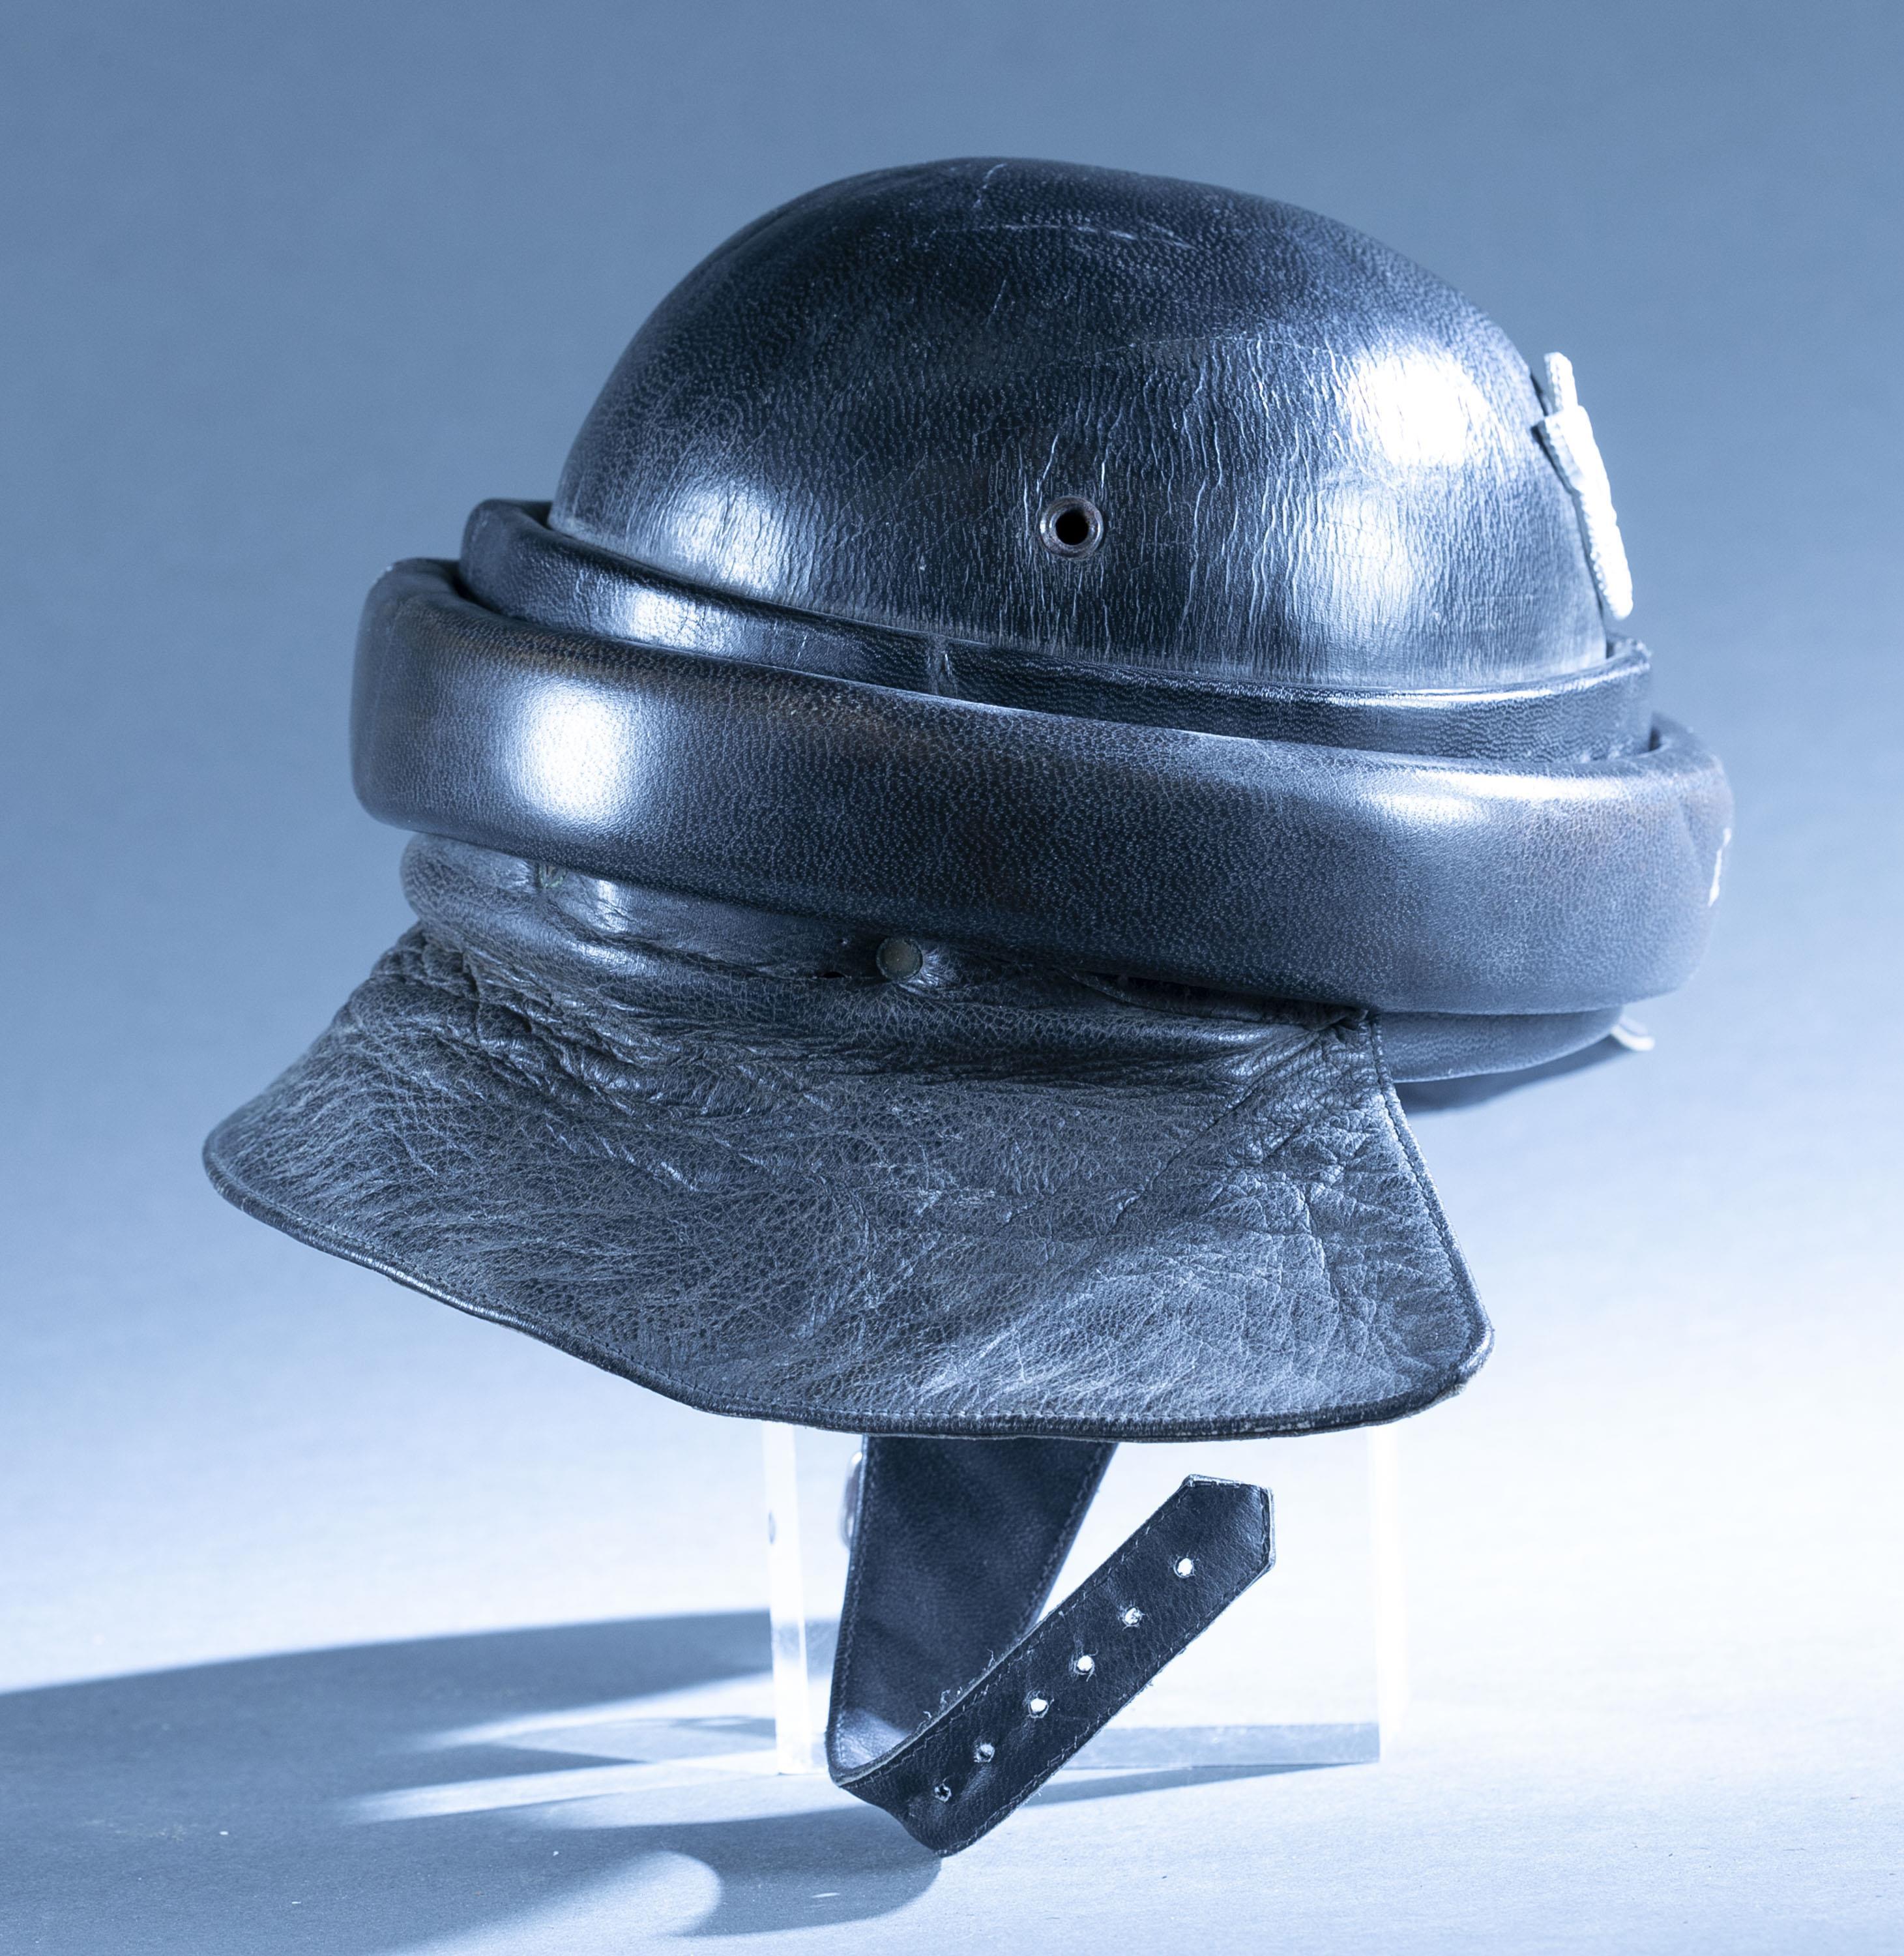 WWII German NSKK motorcycle helmet